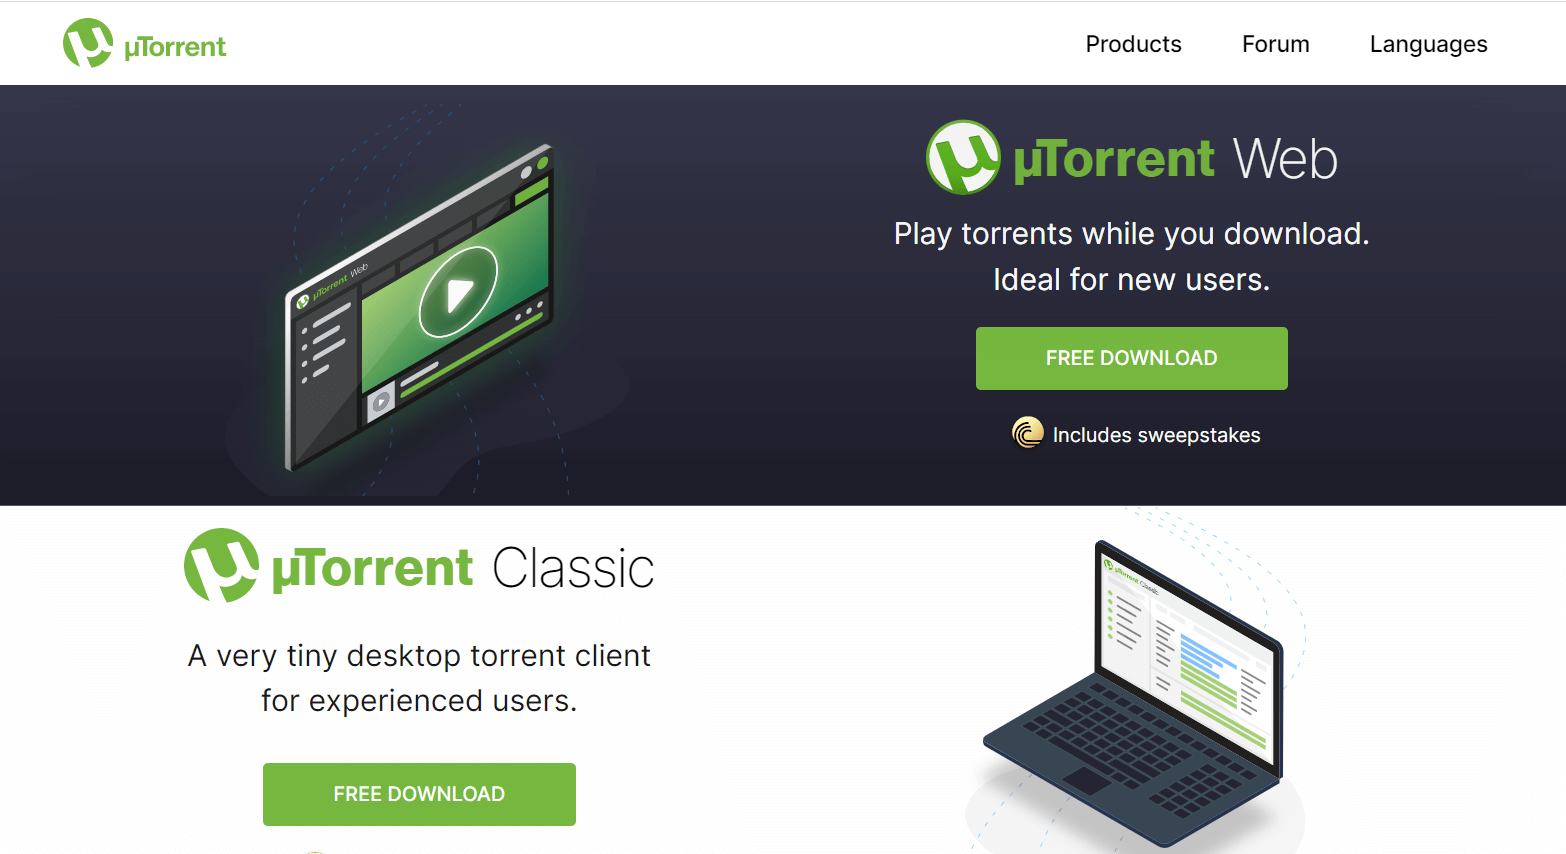 utorrent download